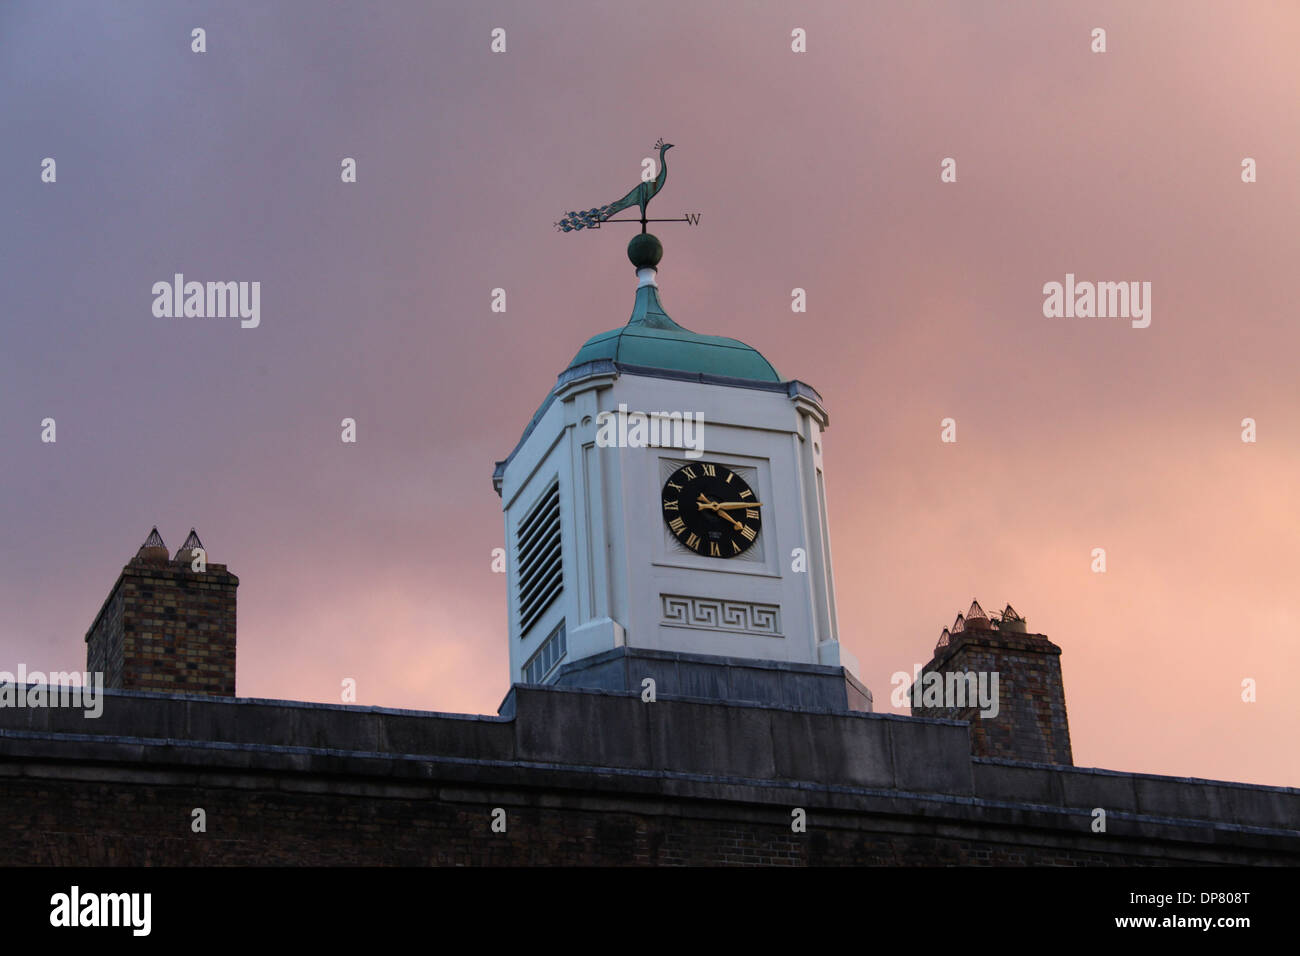 Peacock banderuola sul tetto del Coach House Building a Chester Beatty Library di Dublino al tramonto Foto Stock